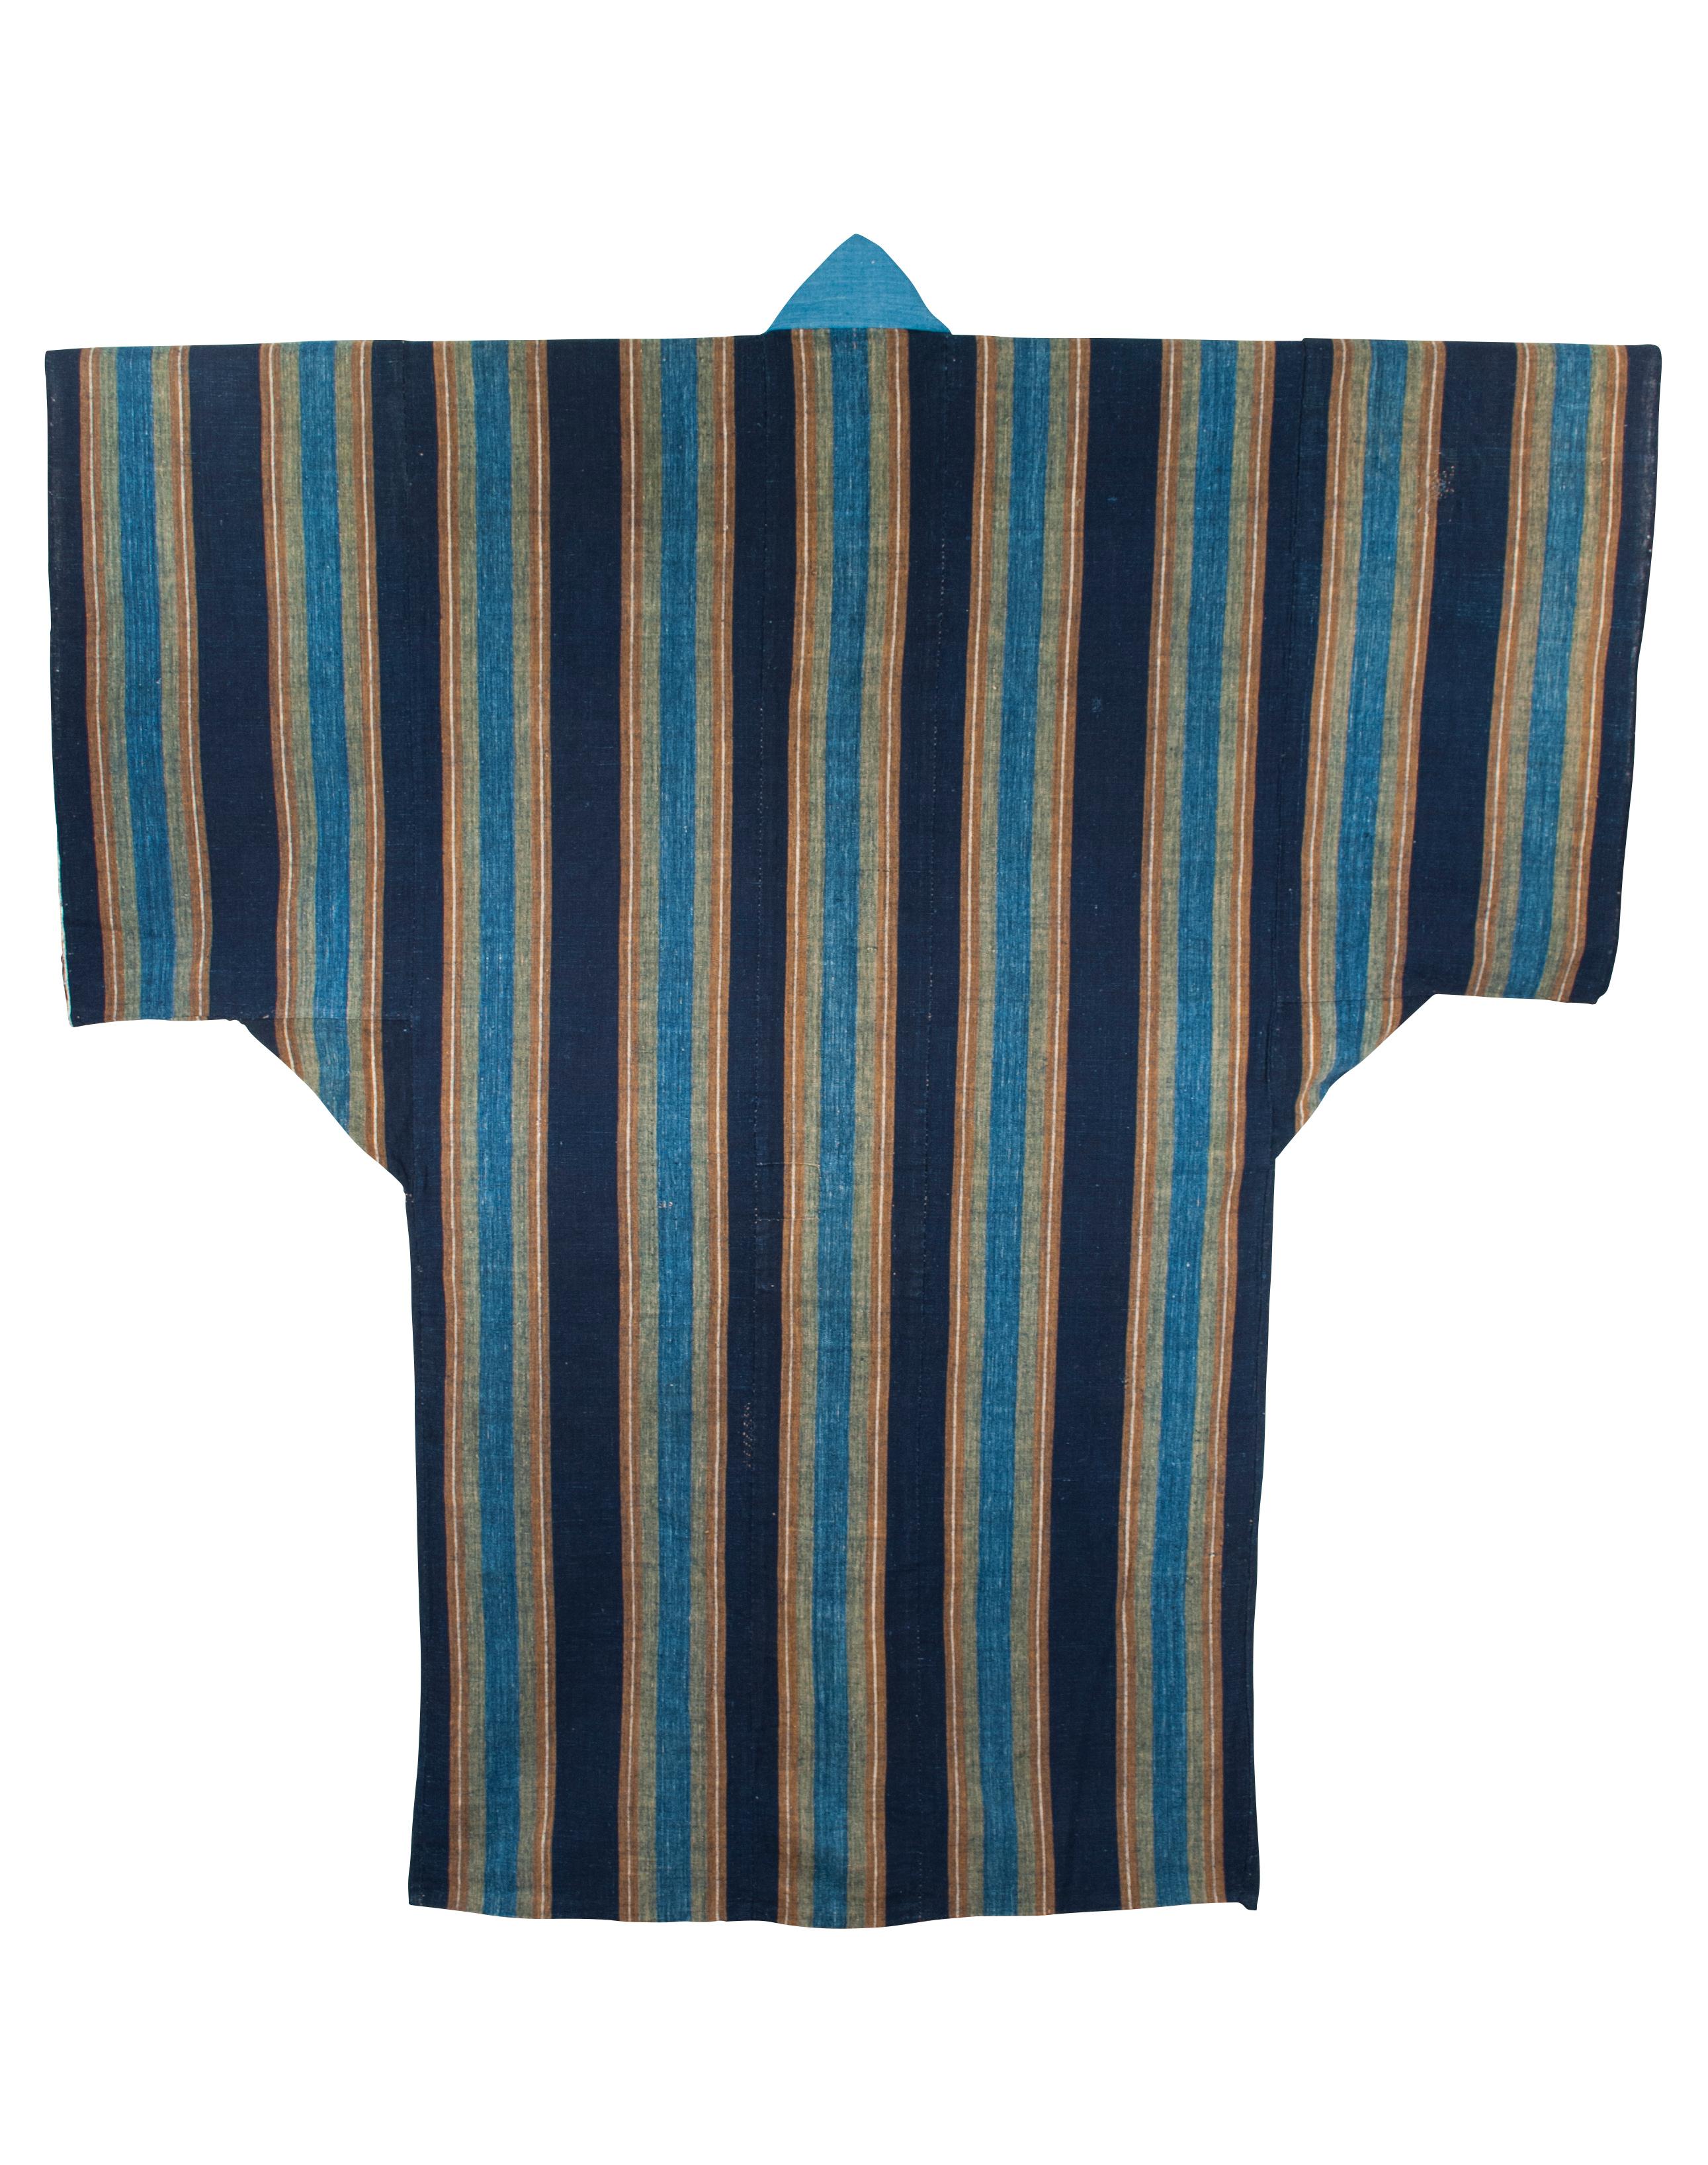 Kimono endormi de la fin de la période Meiji / Yogi, Japon

Les yogis sont un type de kimono de couchage surdimensionné traditionnellement utilisé au Japon. Ce kimono aurait été rembourré avec de la ouate de coton, comme un futon. Le coton et la